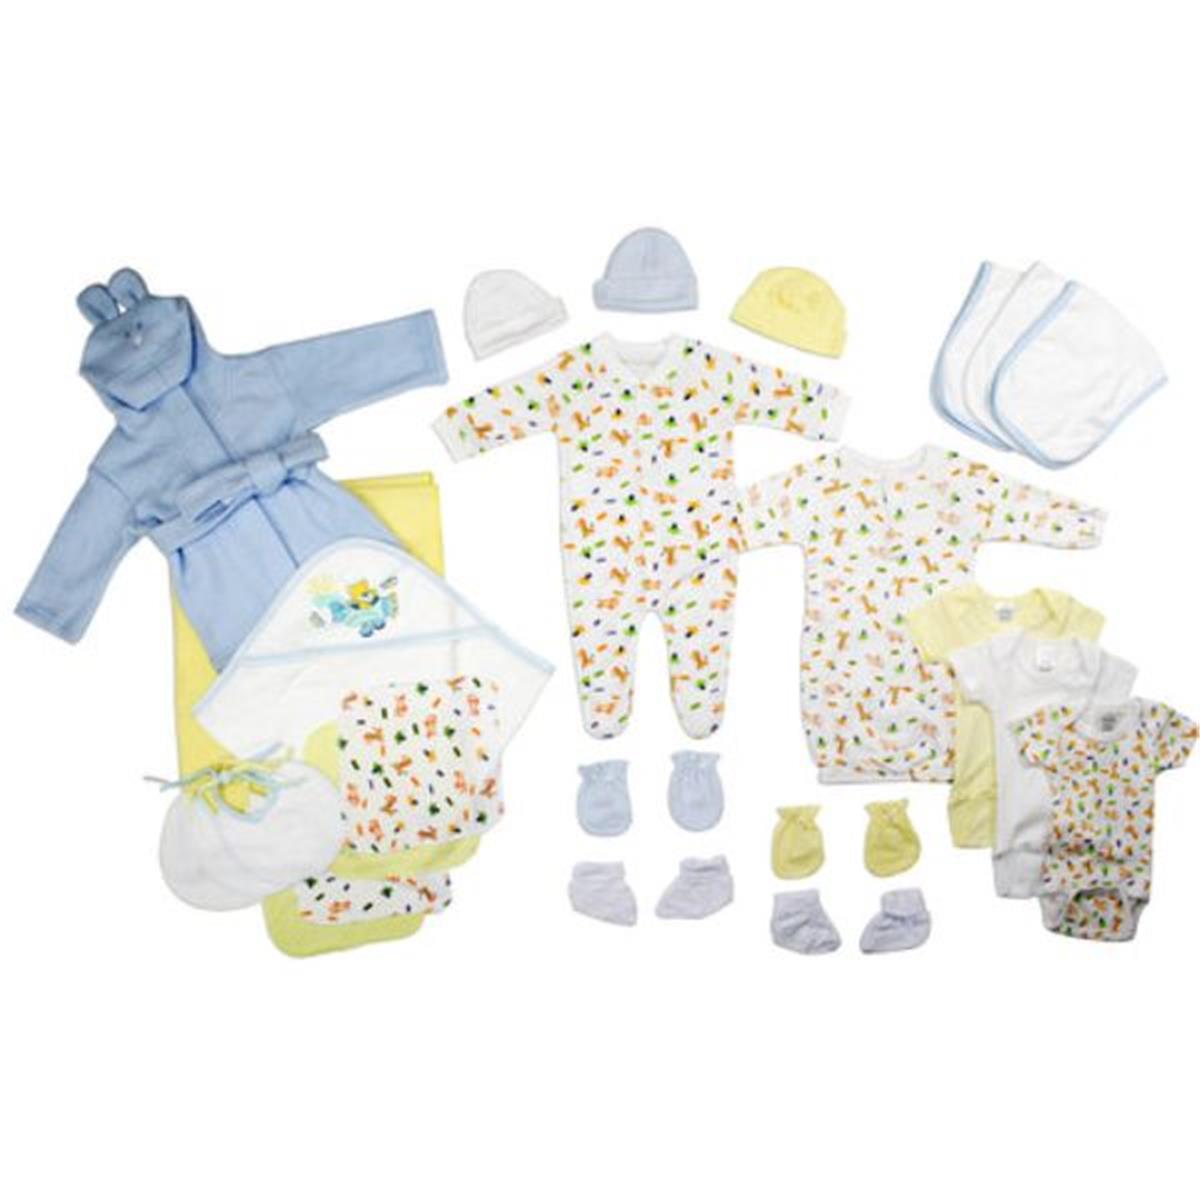 Bambini LS-0112 Newborn Baby Boys Layette Baby Shower Gift Set&#44; White & Blue - Newborn